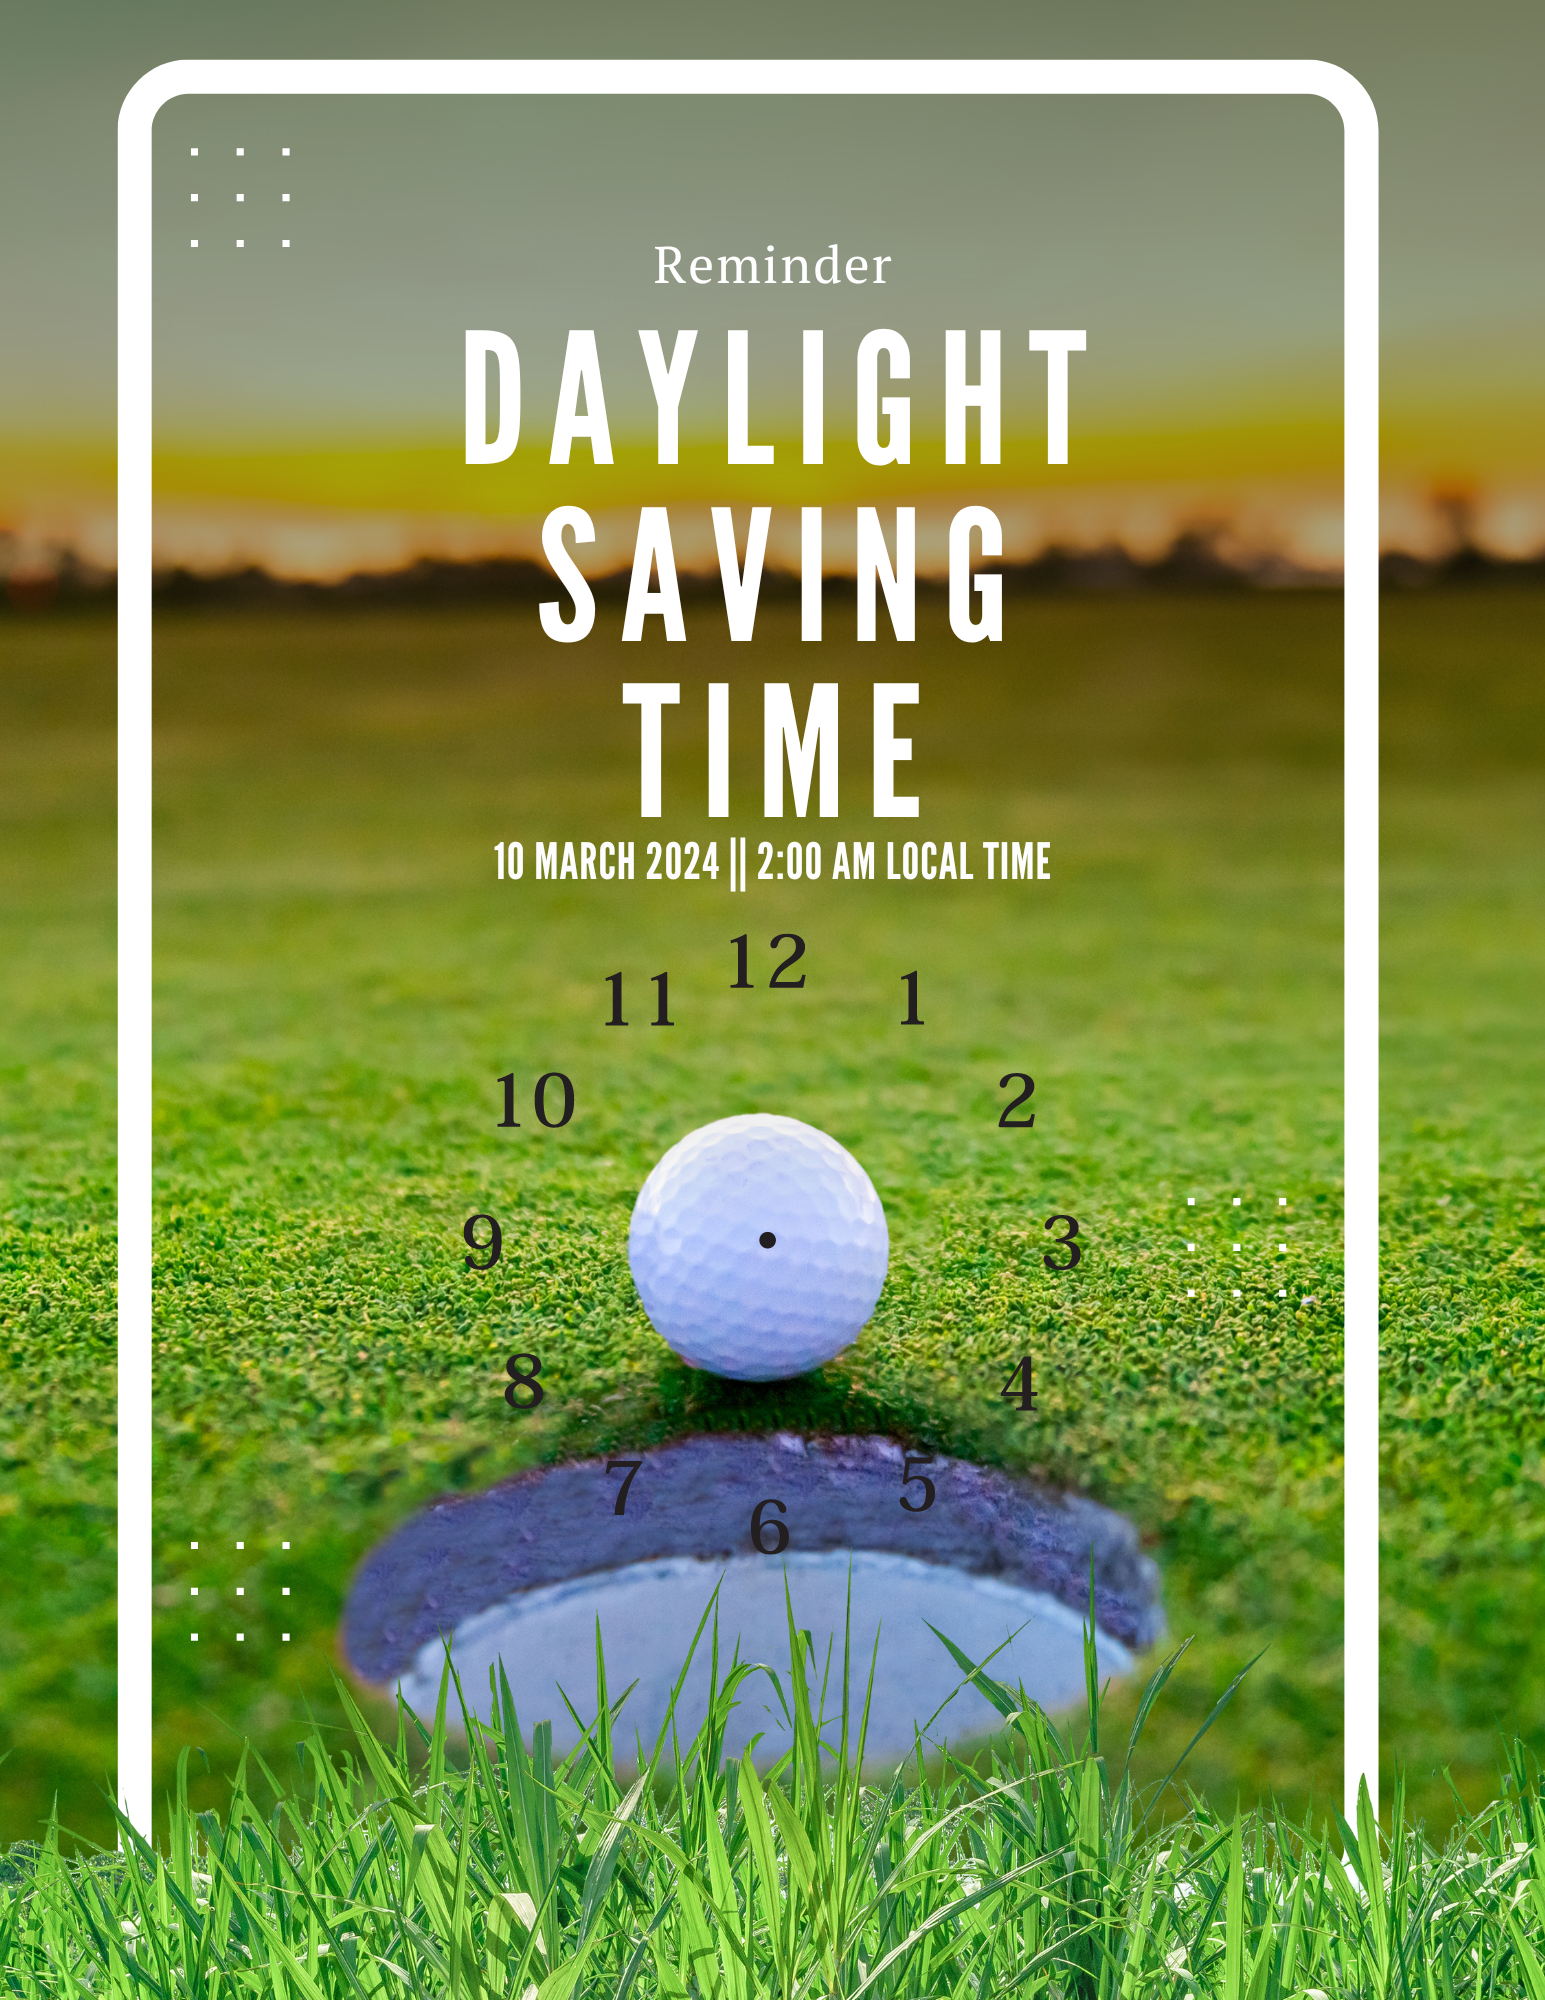 Daylight Saving Reminder